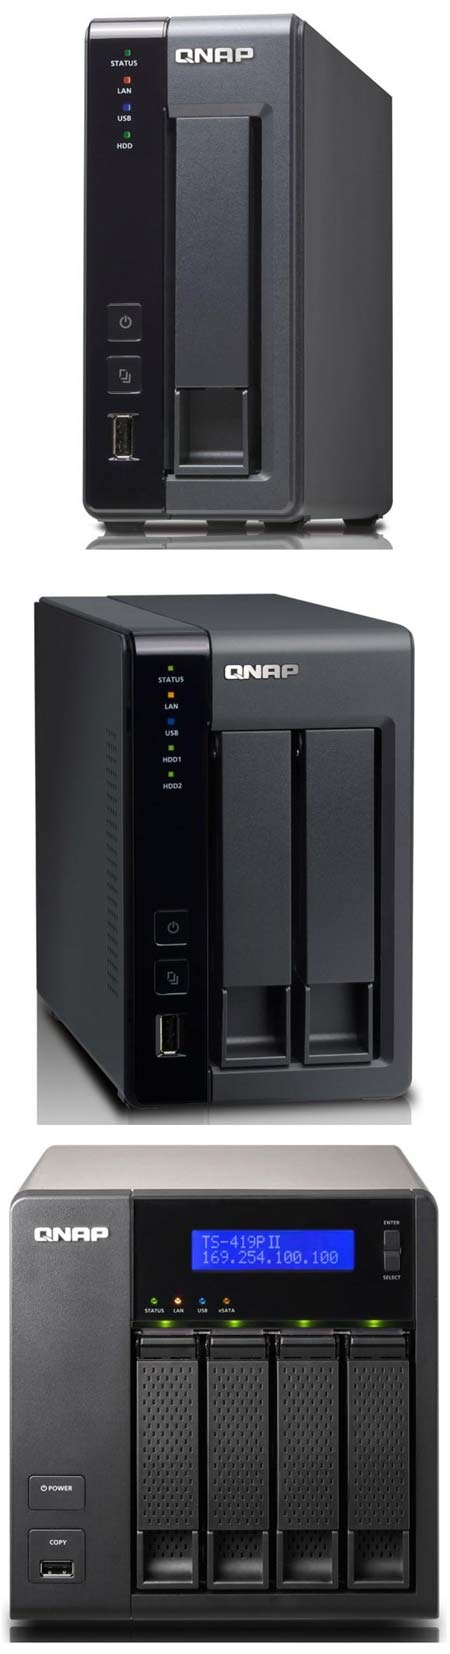 QNAP представляет новые NAS-сервера - TS-419P II, TS-219P II и TS-119P